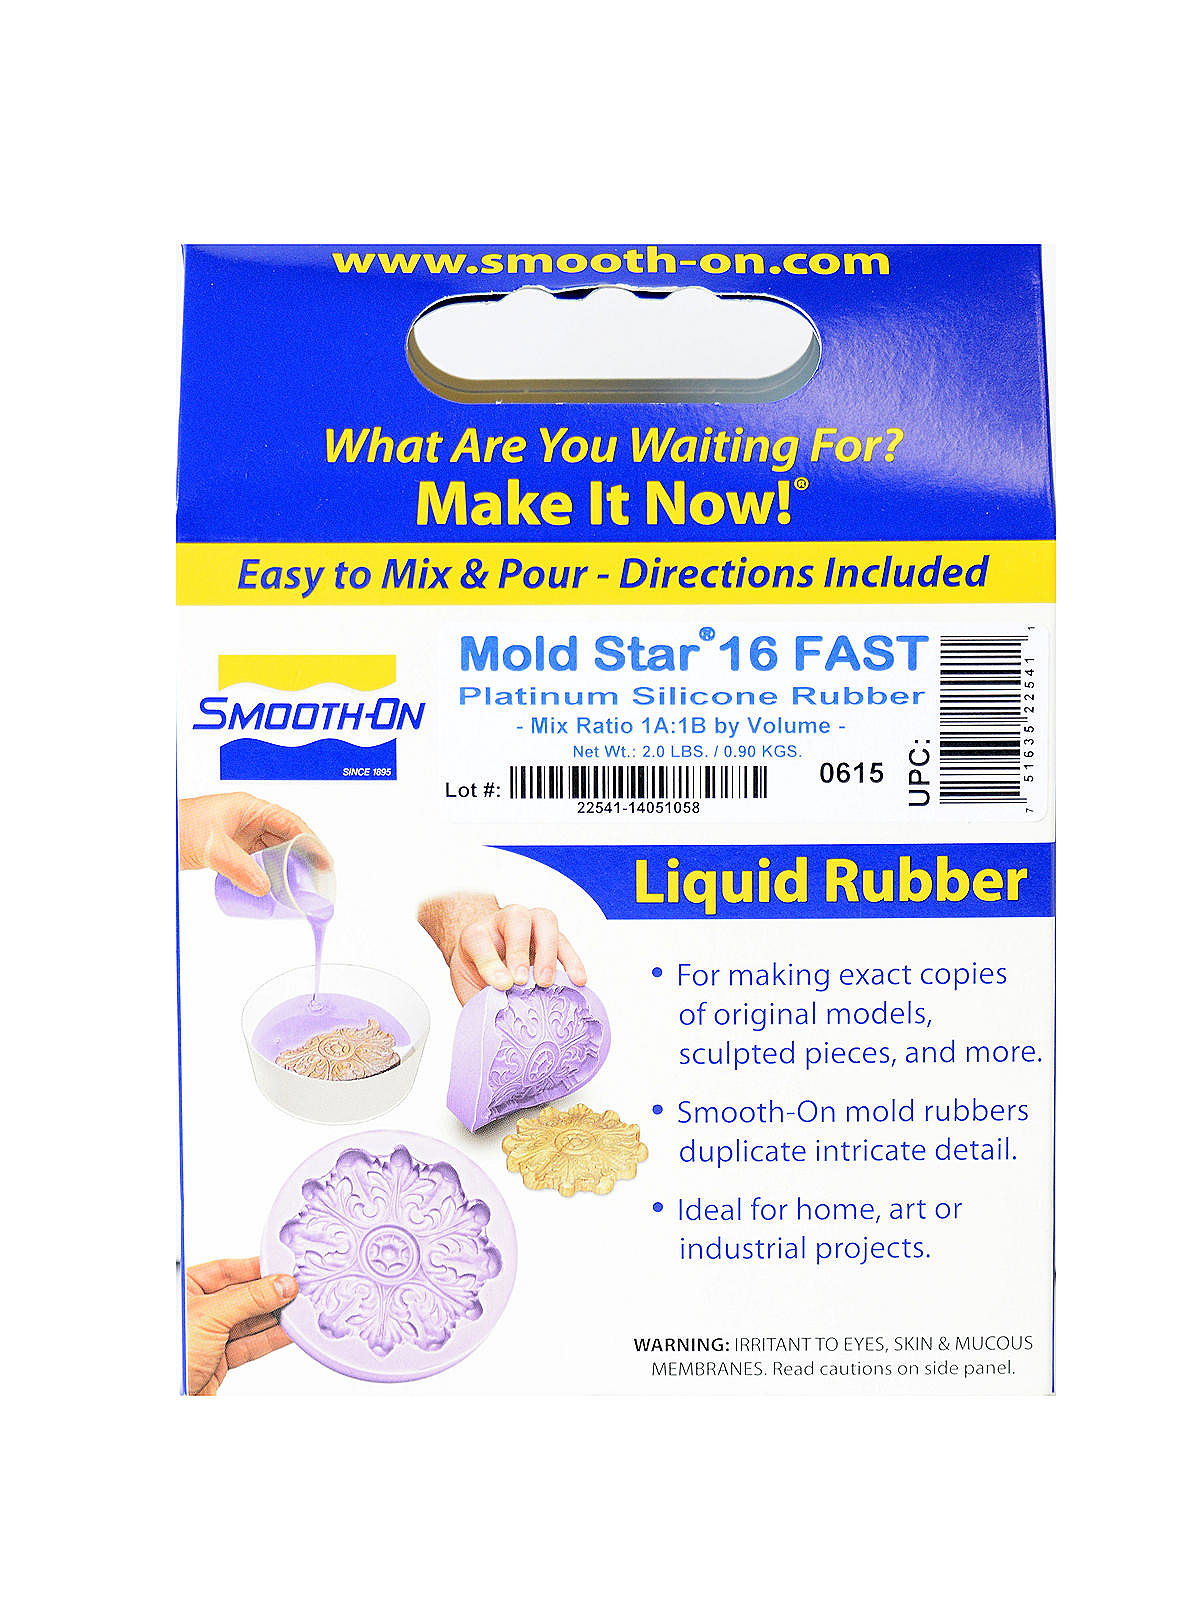 Mold Star Liquid Silicone Mold Rubber